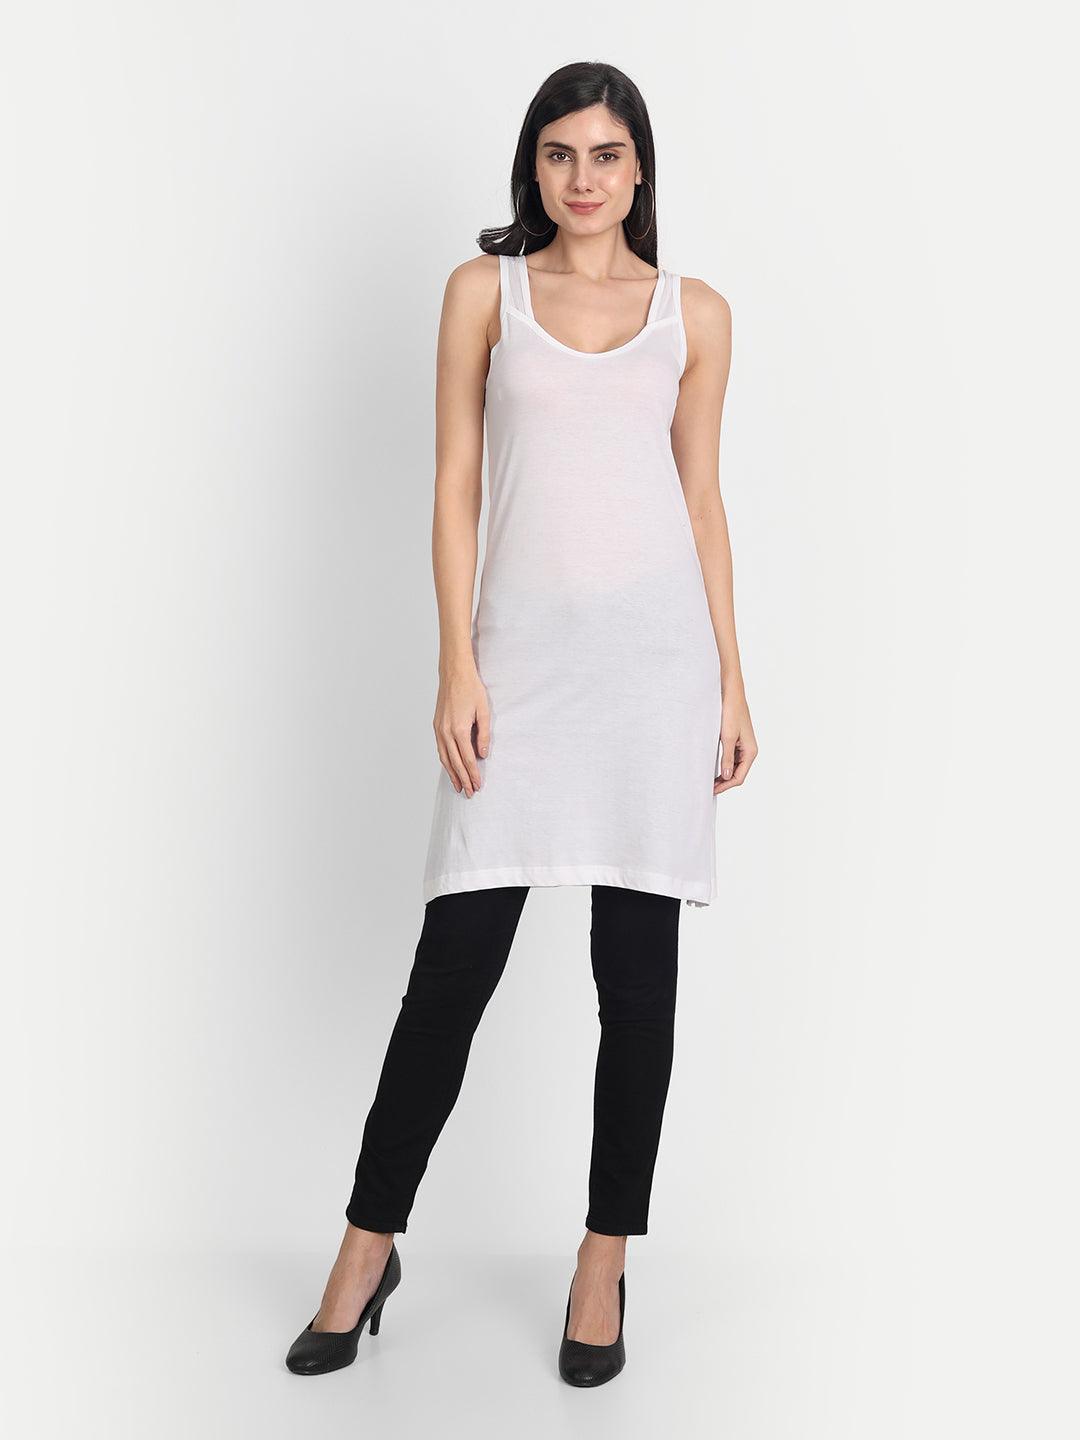 Camisole Slips for Sheer Kurtis Dress White Women cotton Long Full Inner  Slips | eBay